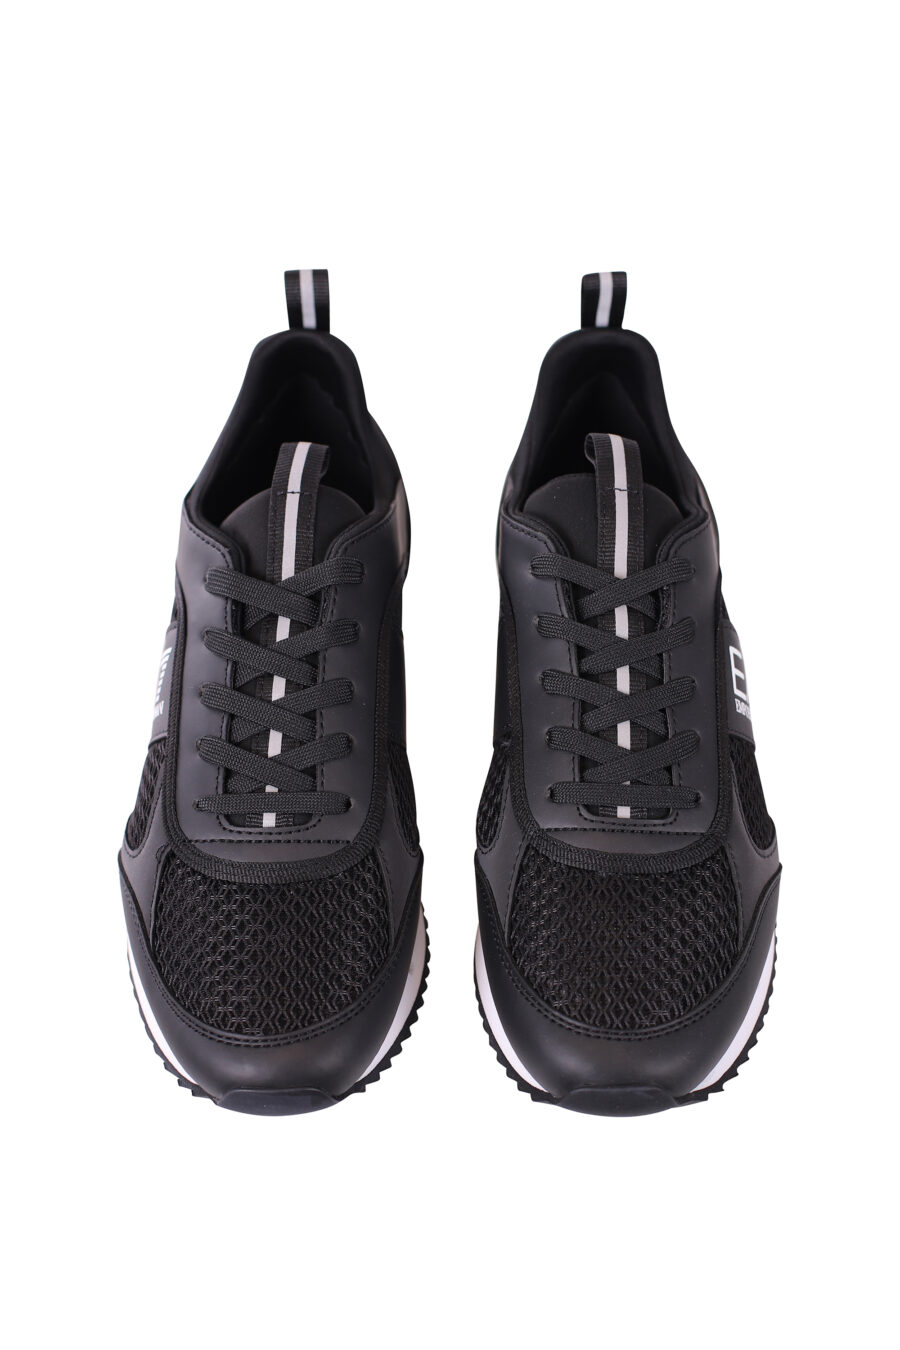 Zapatillas negras transpirables con logo "lux identity" blanco y suela bicolor - IMG 5642